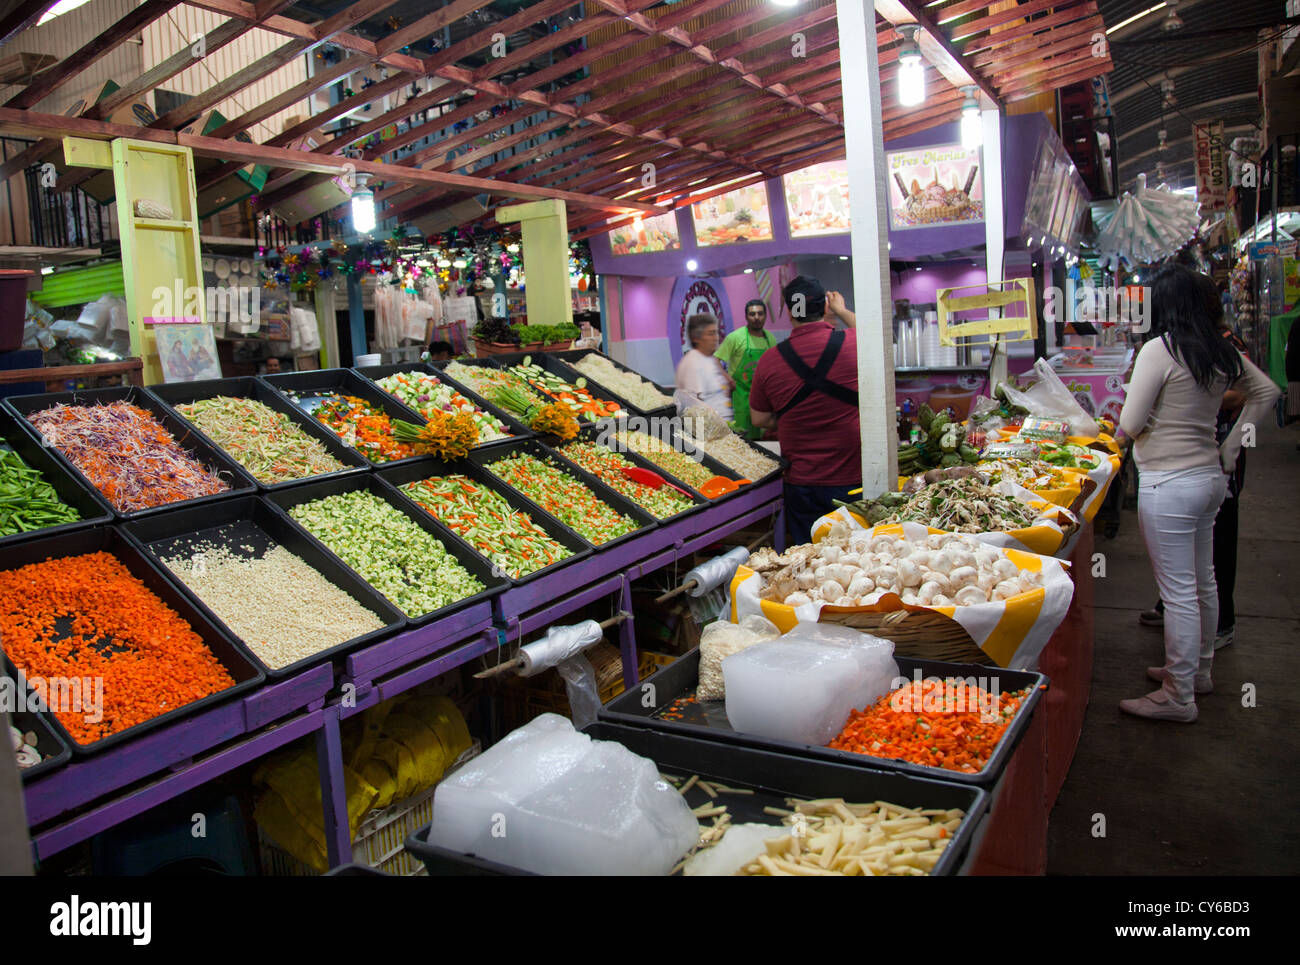 Jamaica Market in Colonia Jamaica in Venustiano Carranza borough of Mexico City Stock Photo